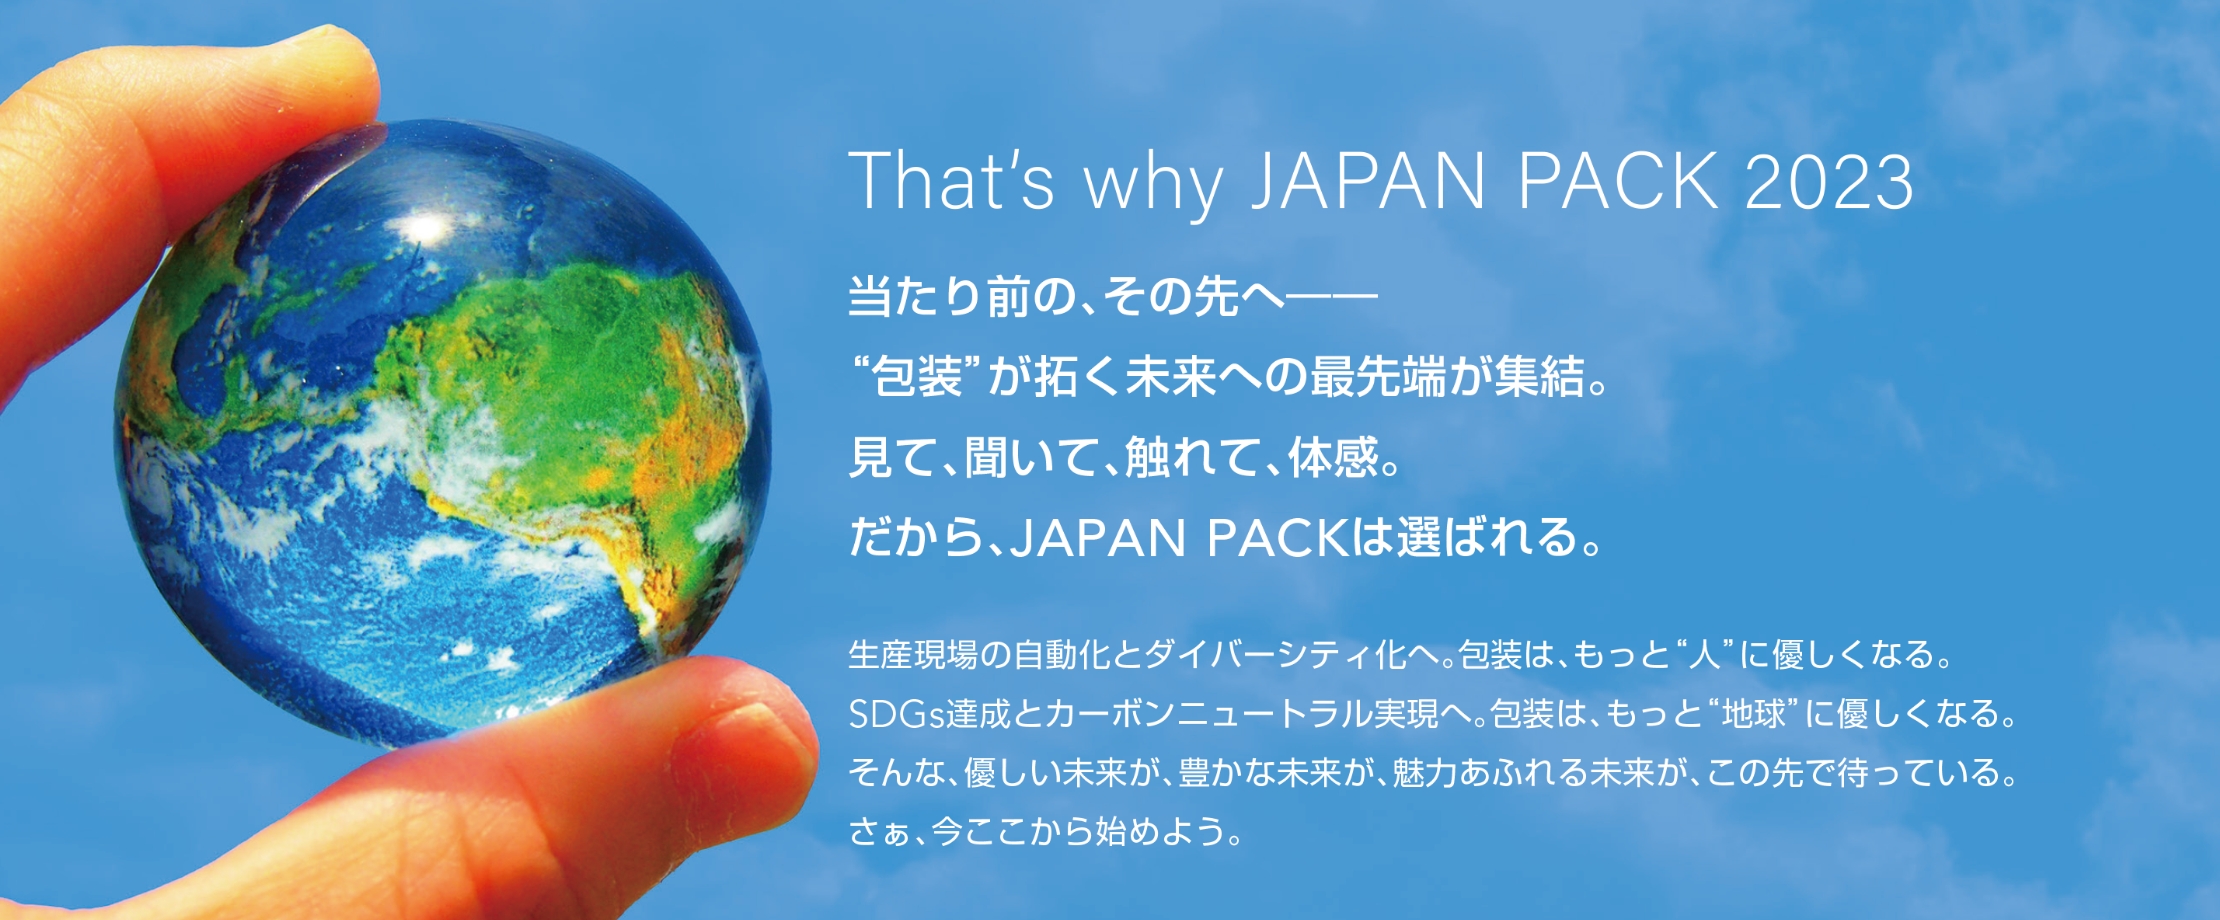 That’s why JAPAN PACK 2023 当たり前の、その先へ—“包装”が拓く未来への最先端が集結。見て、聞いて、触れて、体感。だから、JAPAN PACKは選ばれる。生産現場の自動化とダイバーシティ化へ。包装は、もっと“人”に優しくなる。SDGs達成とカーボンニュートラル実現へ。包装は、もっと“地球”に優しくなる。そんな、優しい未来が、豊かな未来が、魅力あふれる未来が、この先で待っている。さぁ、今ここから始めよう。